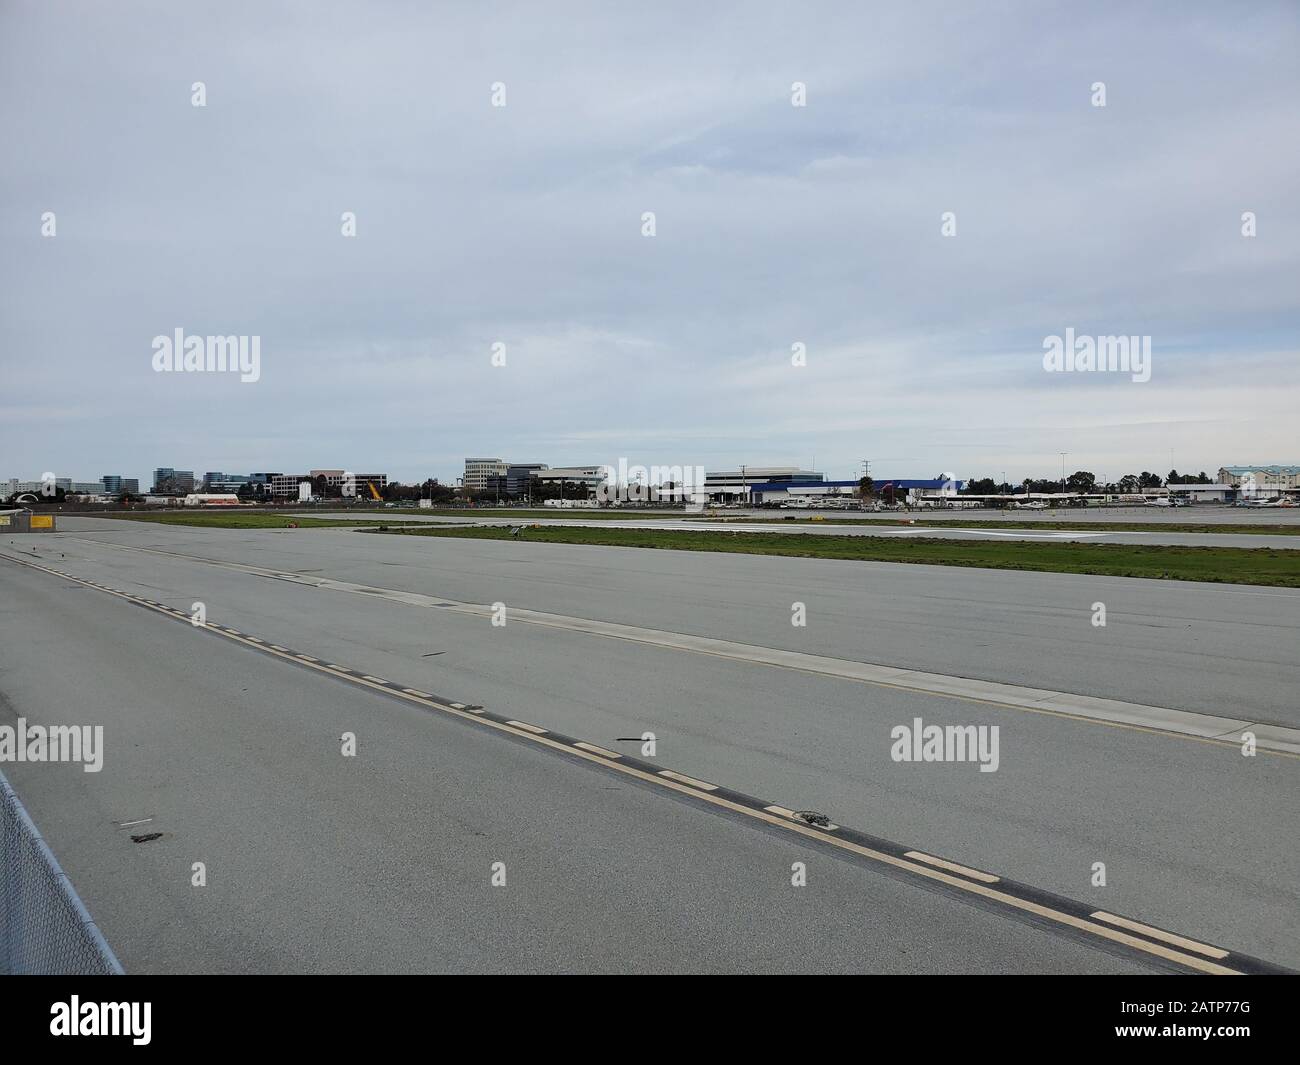 Piste d'atterrissage à l'aéroport de San Carlos (SQL), un aéroport municipal de la Silicon Valley, San Carlos, Californie, 19 janvier 2020. () Banque D'Images